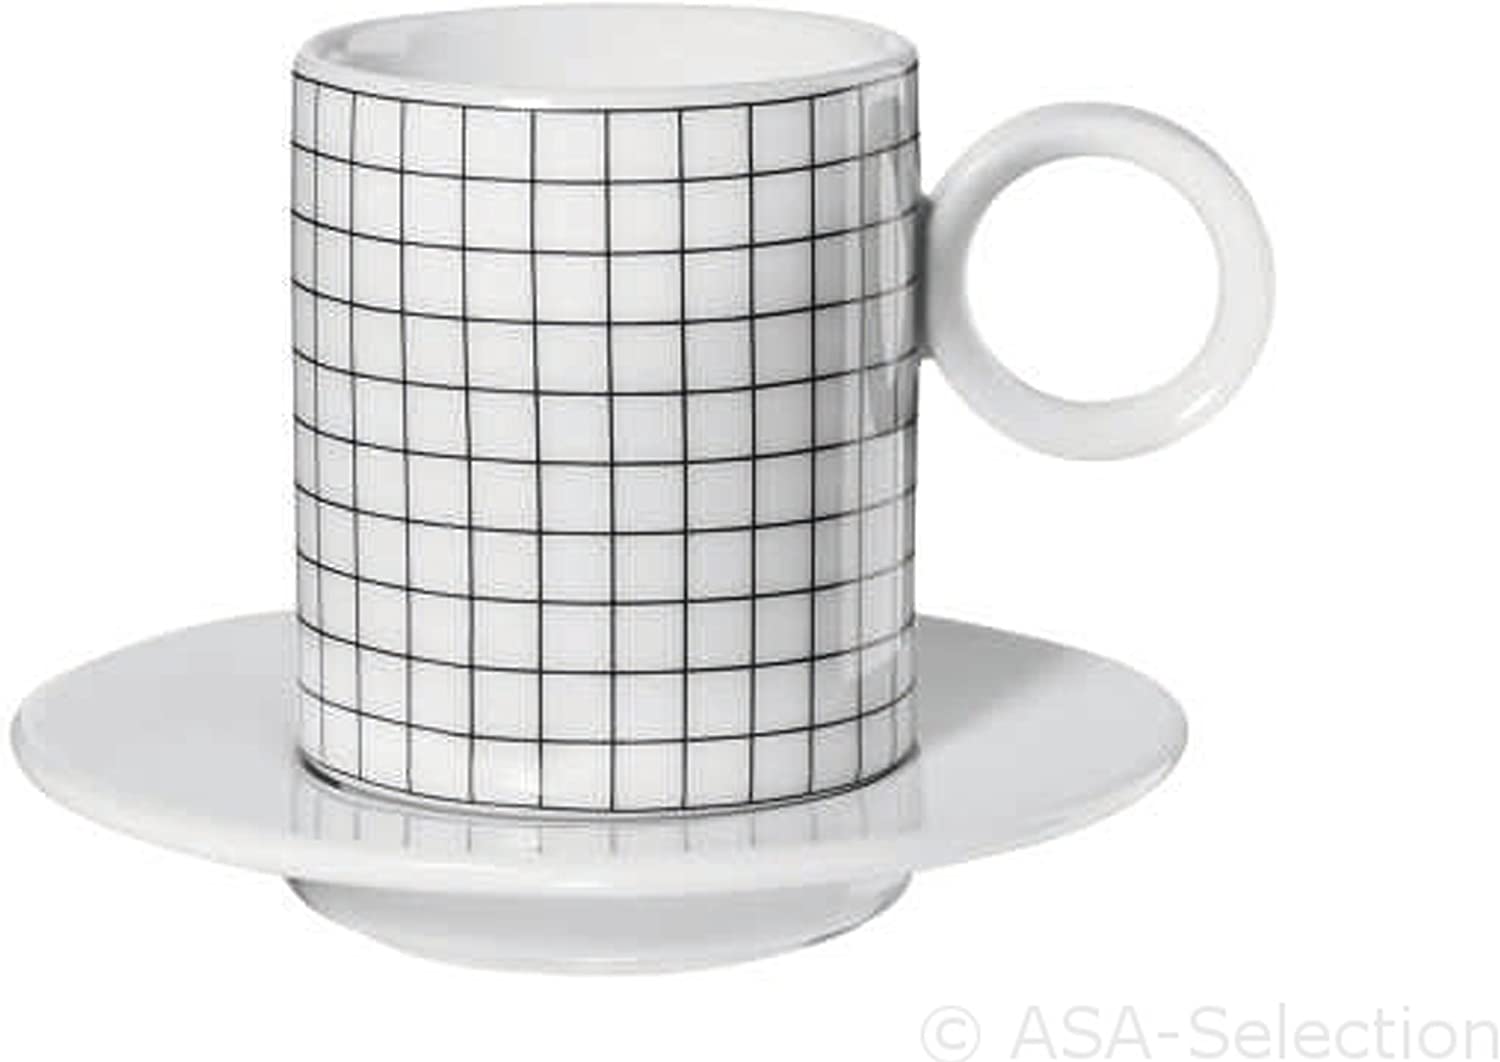 ASA Memphis 2erSet Espresso Cups Squares 0.1 Litre Diameter 5.5 cm x 6.3 cm